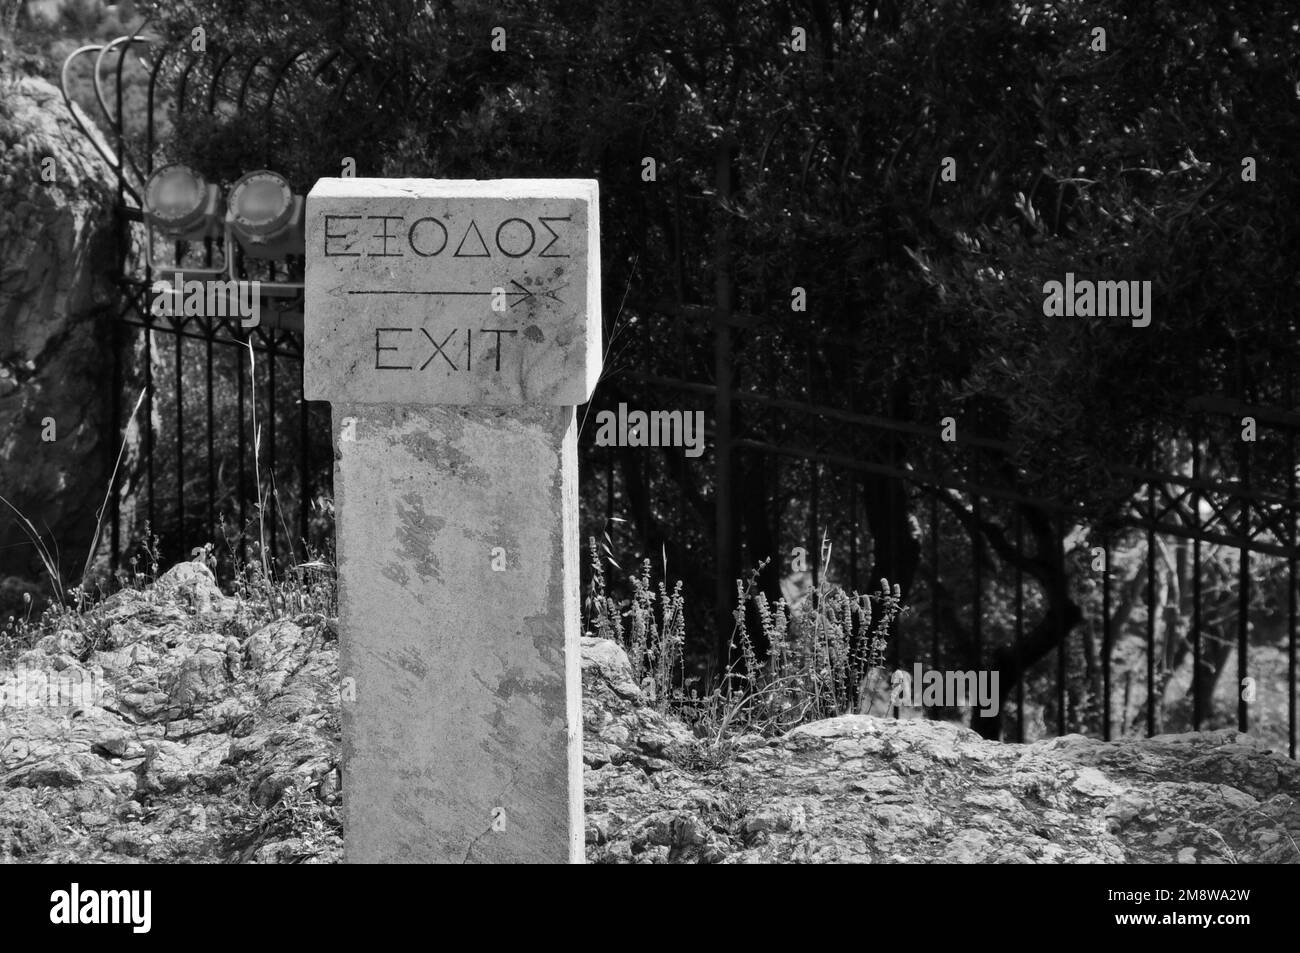 Panneau indiquant la sortie du site archéologique de l'Acropole à Athènes, Grèce. Noir et blanc. Banque D'Images